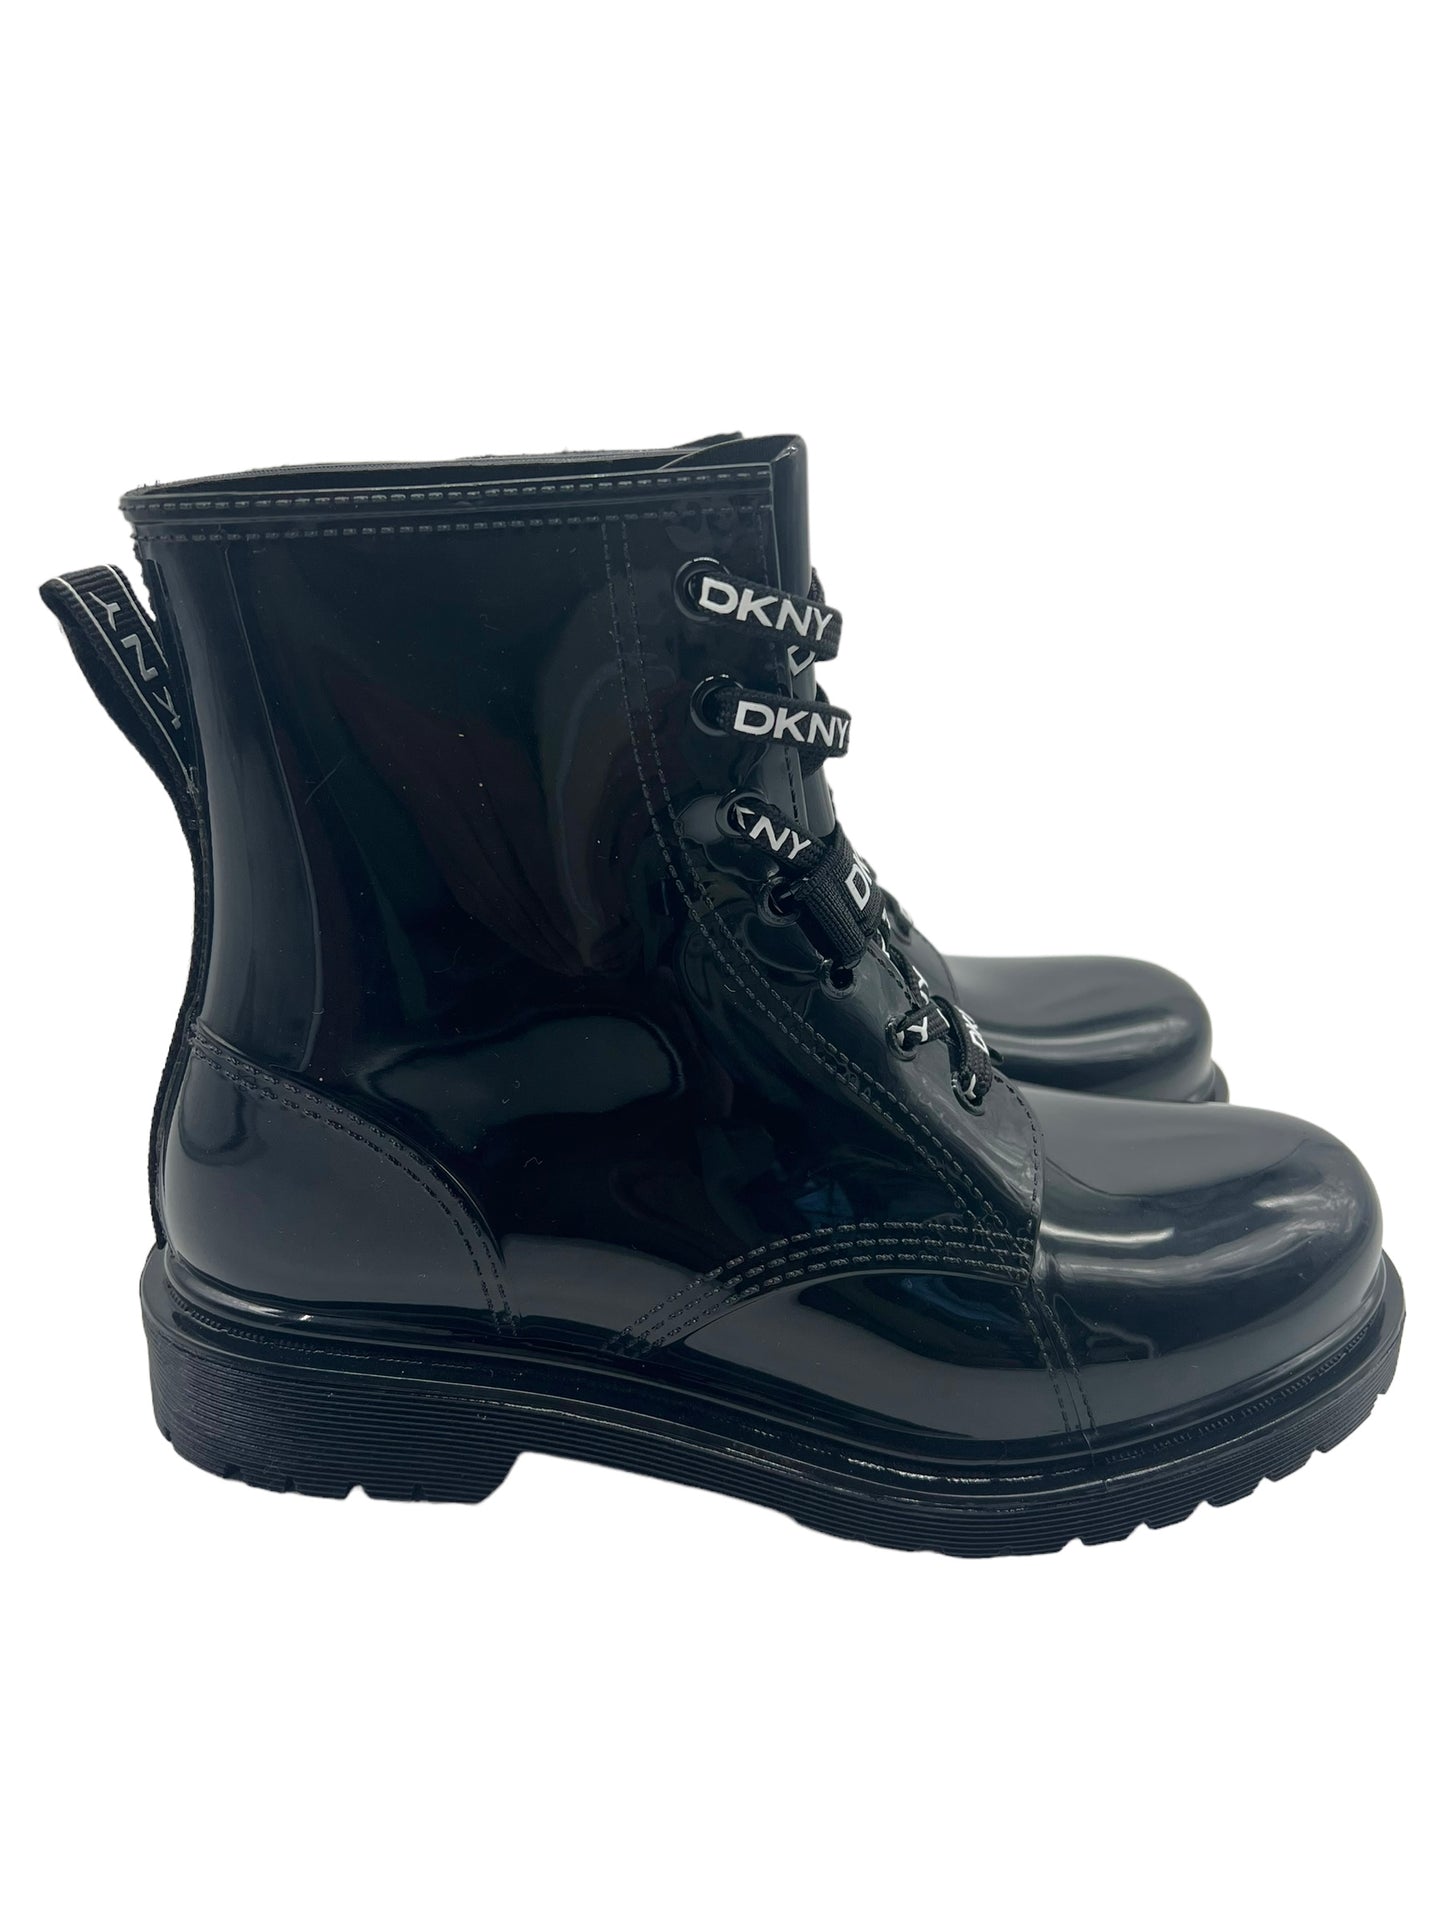 DKNY Black Tilly Logo Size 8 Rain Boots